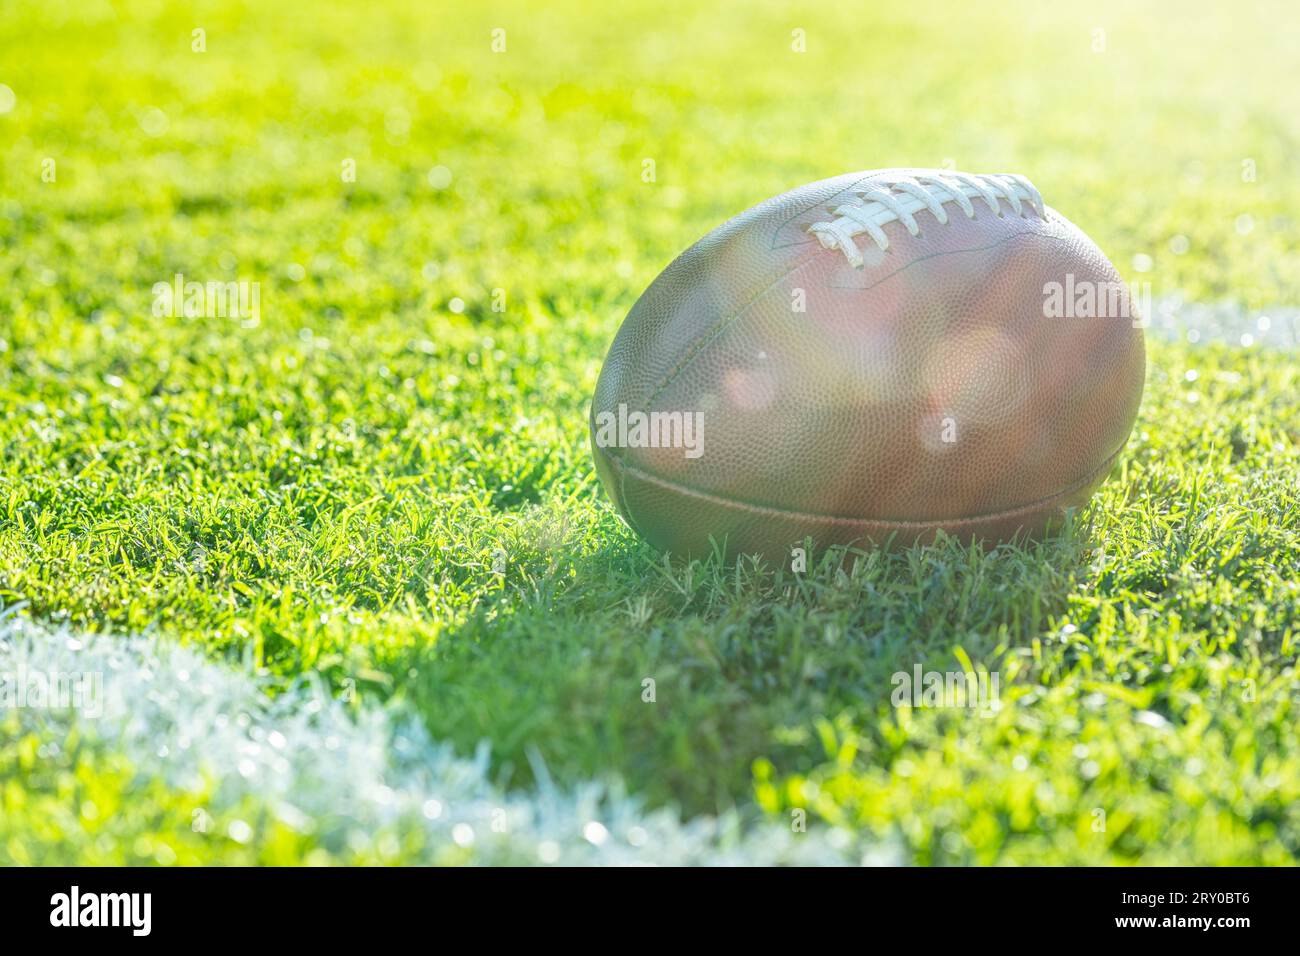 Vista ravvicinata da un angolo basso di un football americano in pelle seduto nell'erba accanto a una linea bianca del cortile con segni di hash sullo sfondo, riflesso dell'obiettivo. Foto Stock